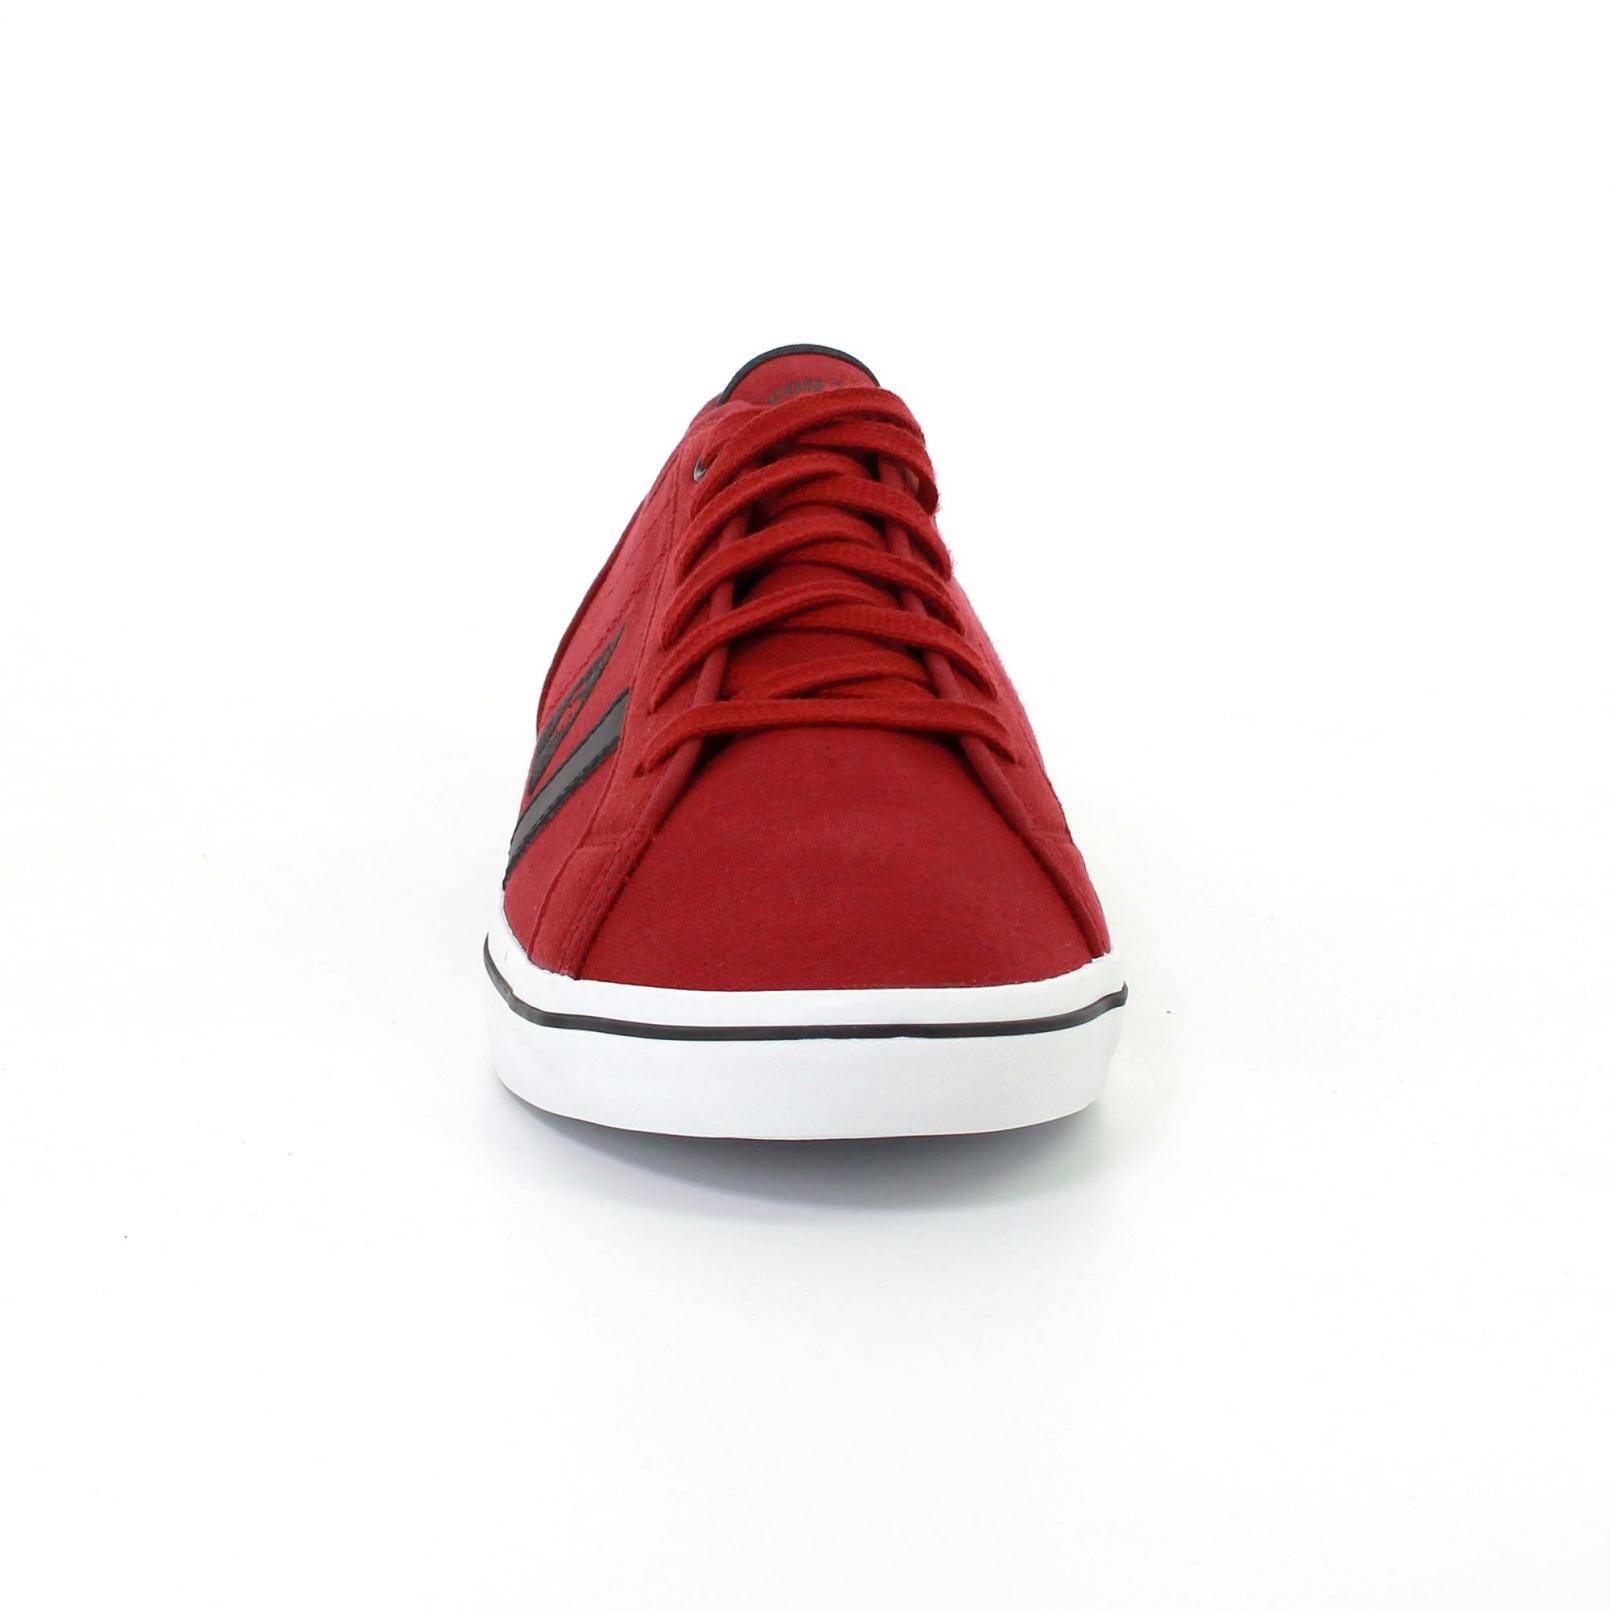 Shoes – Le Coq Sportif Aceone Cvs Red/Black